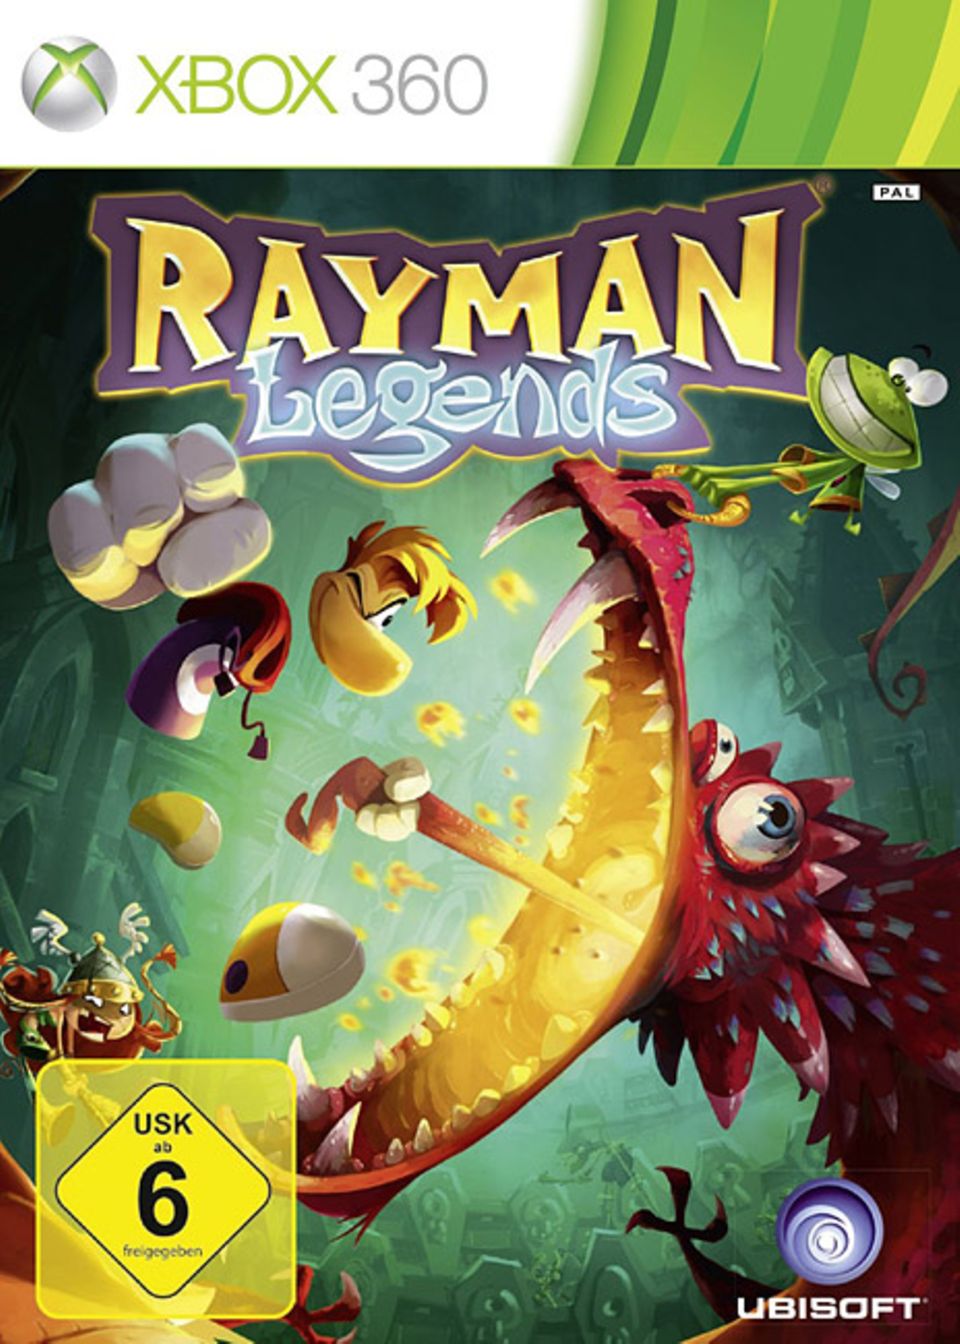 Spieletests: Schön bunt ist es in "Rayman Legends"